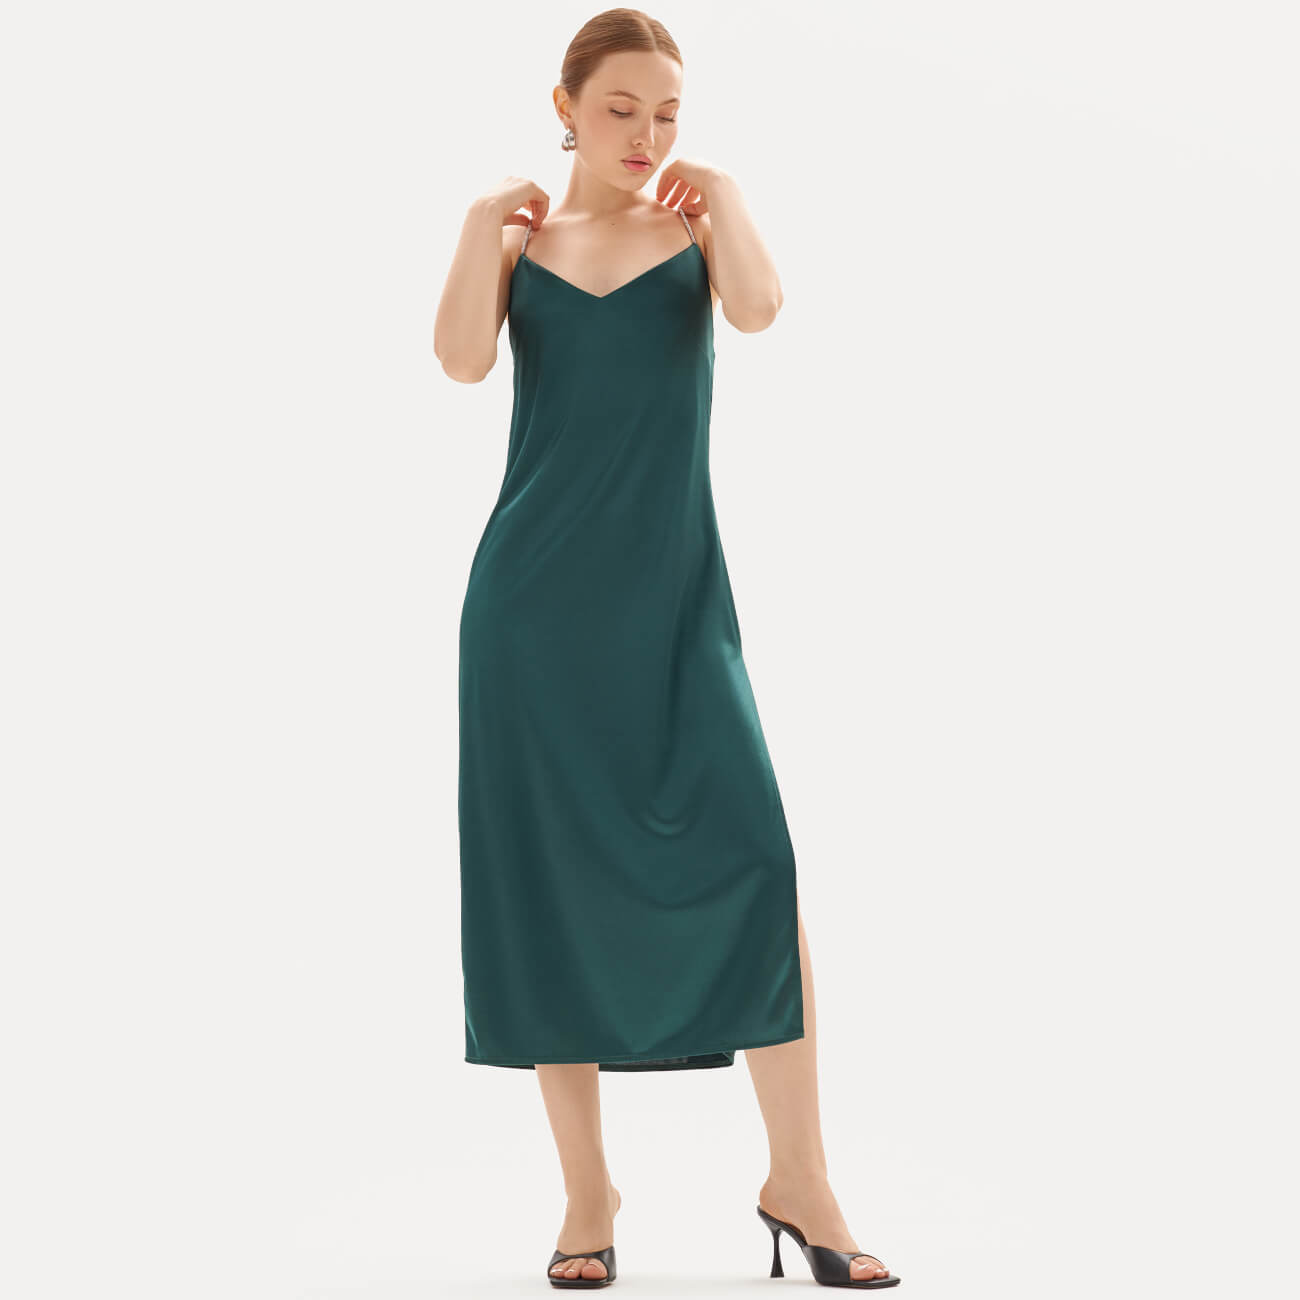 Платье женское, макси, р. XL, на бретельках, полиэстер/эластан, зеленое, Cortni